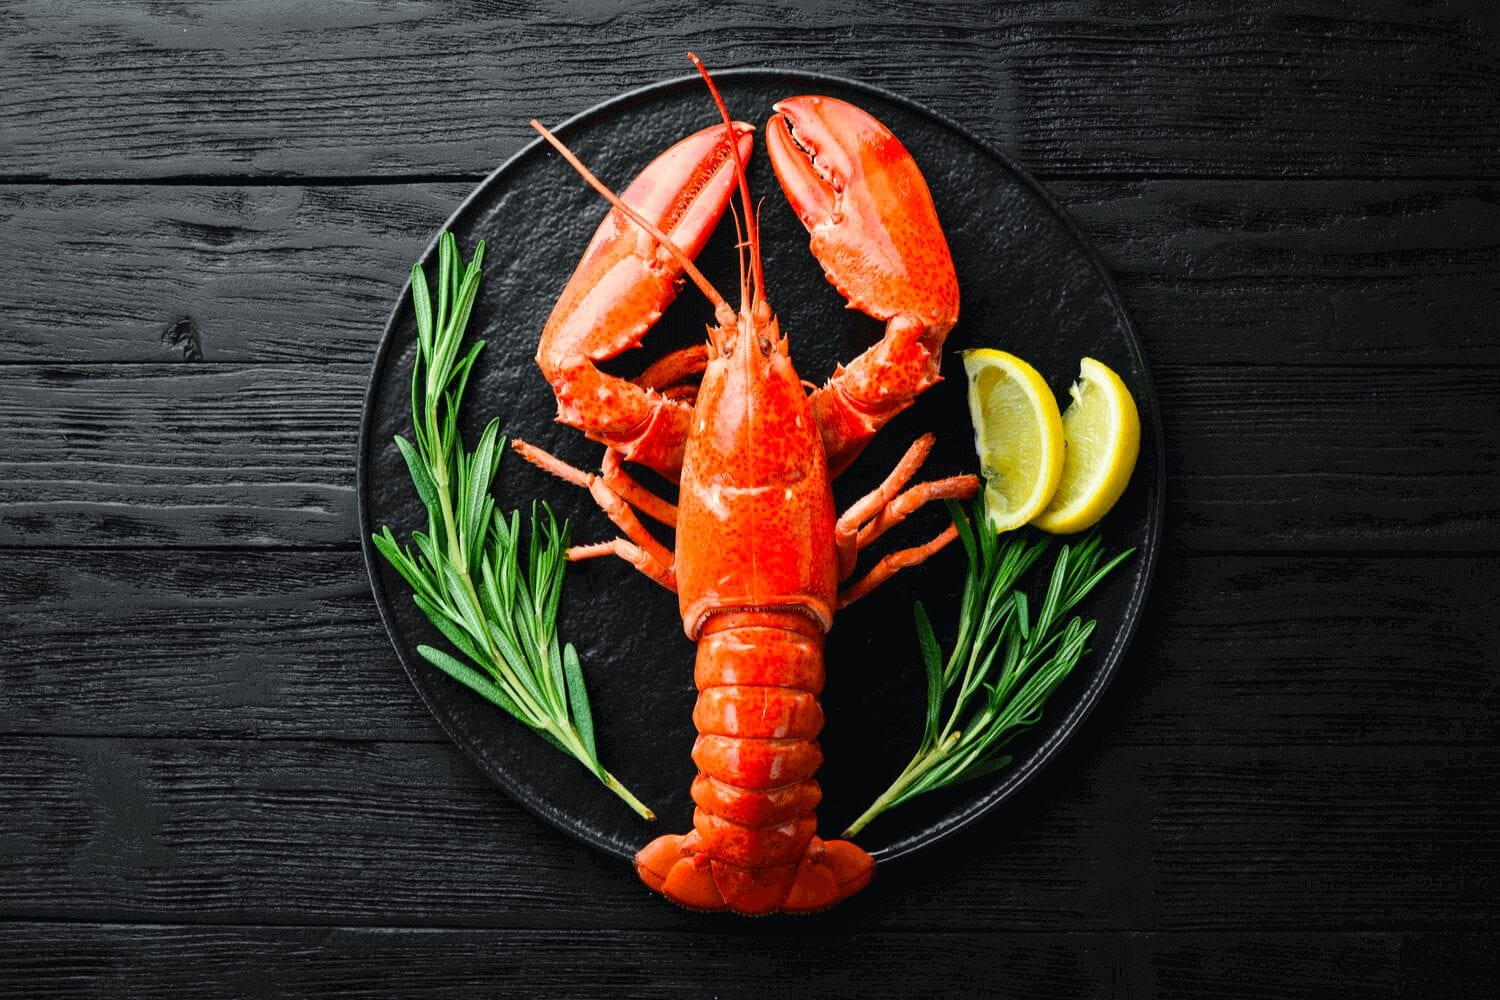 https://newagenseasideinn.com/wp-content/uploads/2020/10/Maine-Lobster.jpg